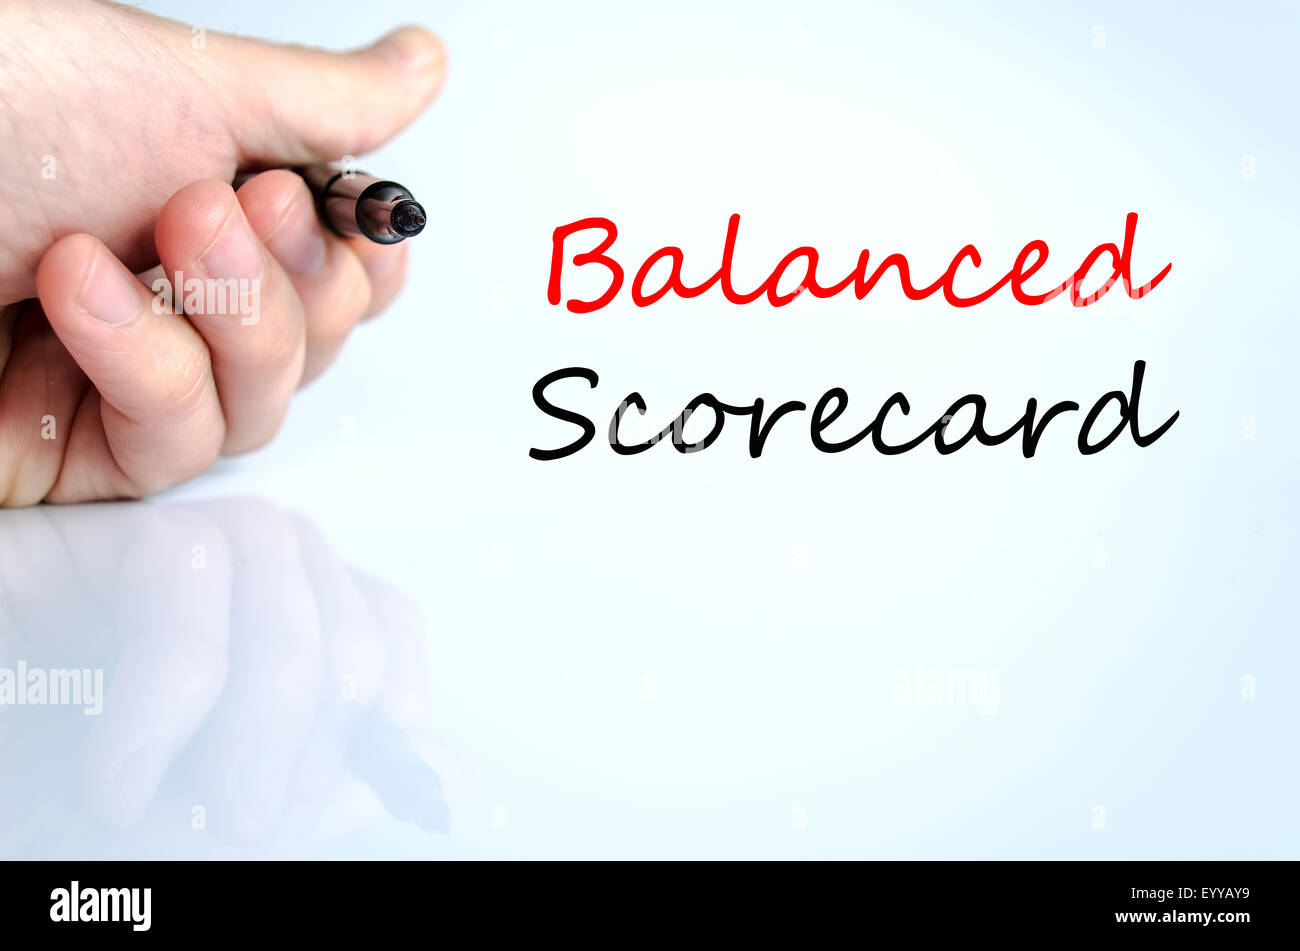 Balanced scorecard testo concetto isolato su sfondo bianco Foto Stock